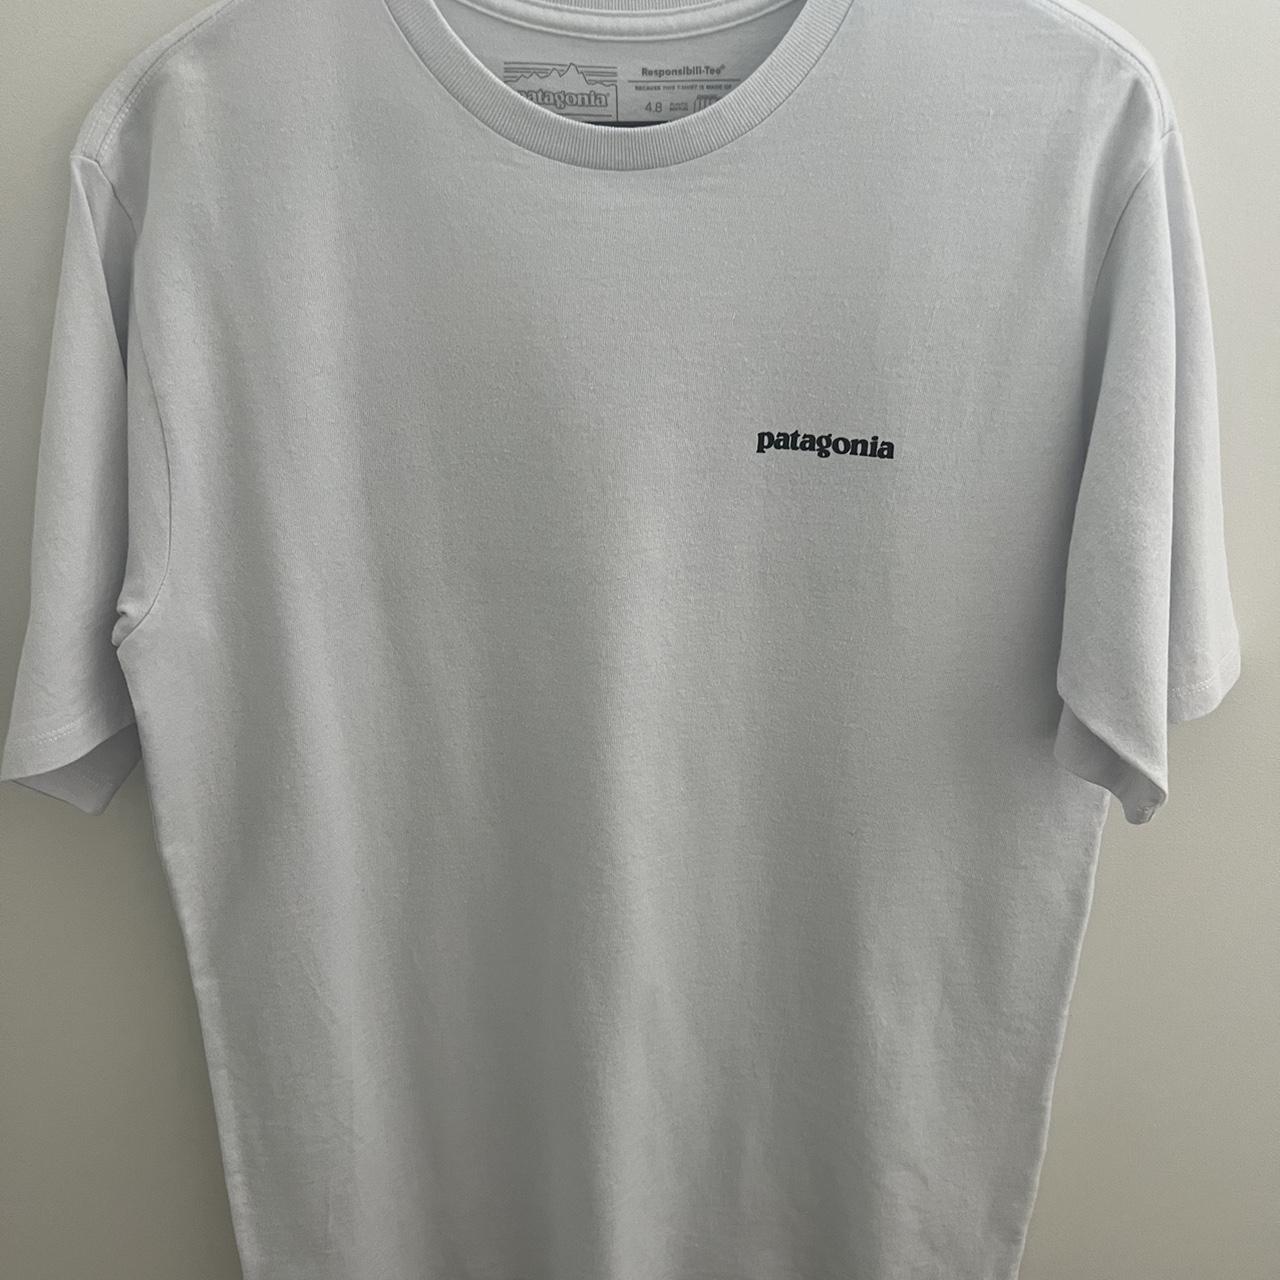 Patagonia white t-shirt Brand - Patagonia Size -... - Depop